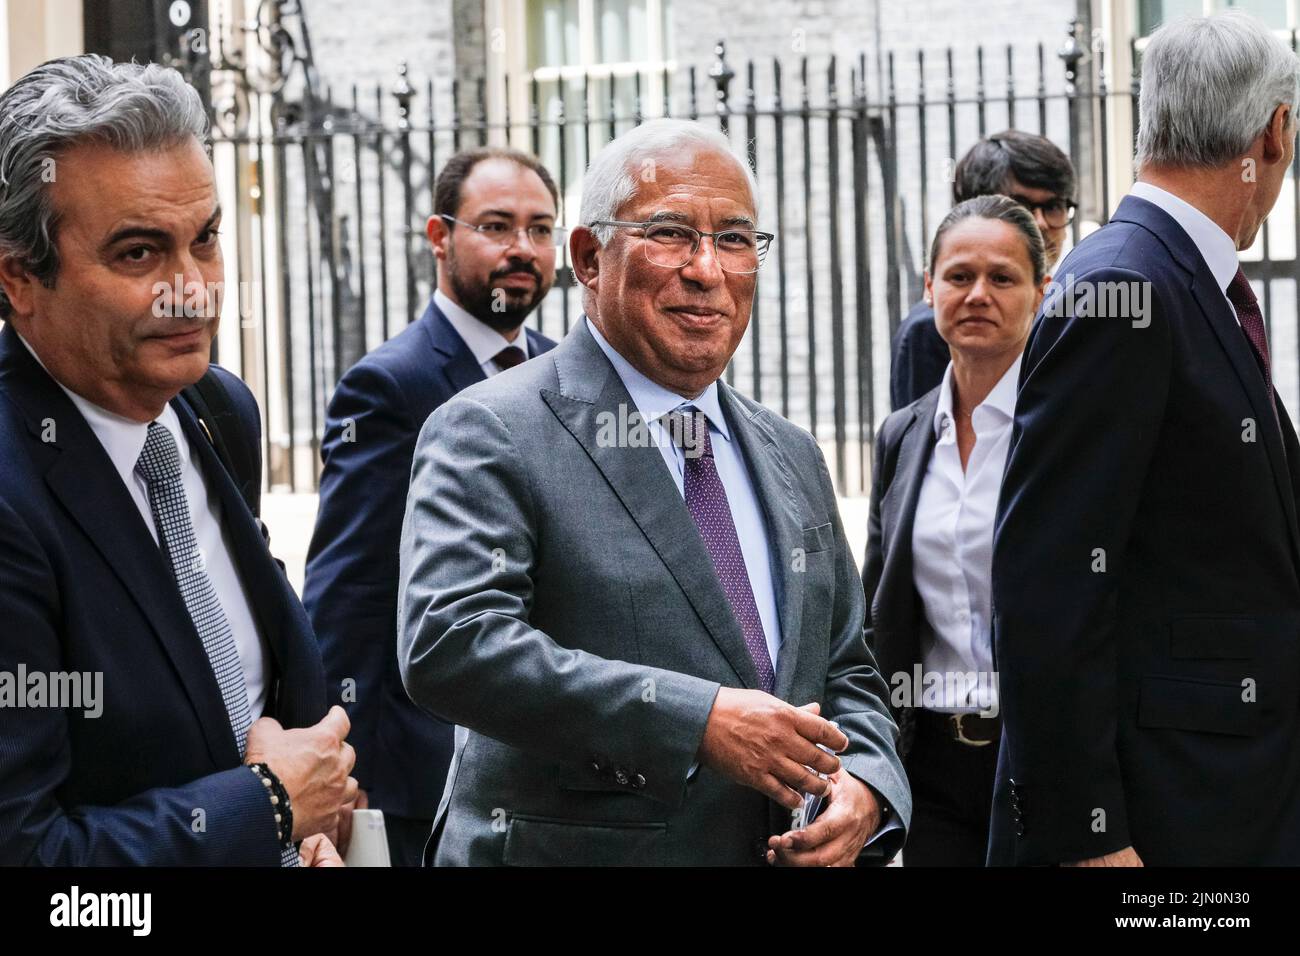 António Costa, Primer Ministro de Portugal, visita oficial a Londres, sonríe ante la cámara Foto de stock